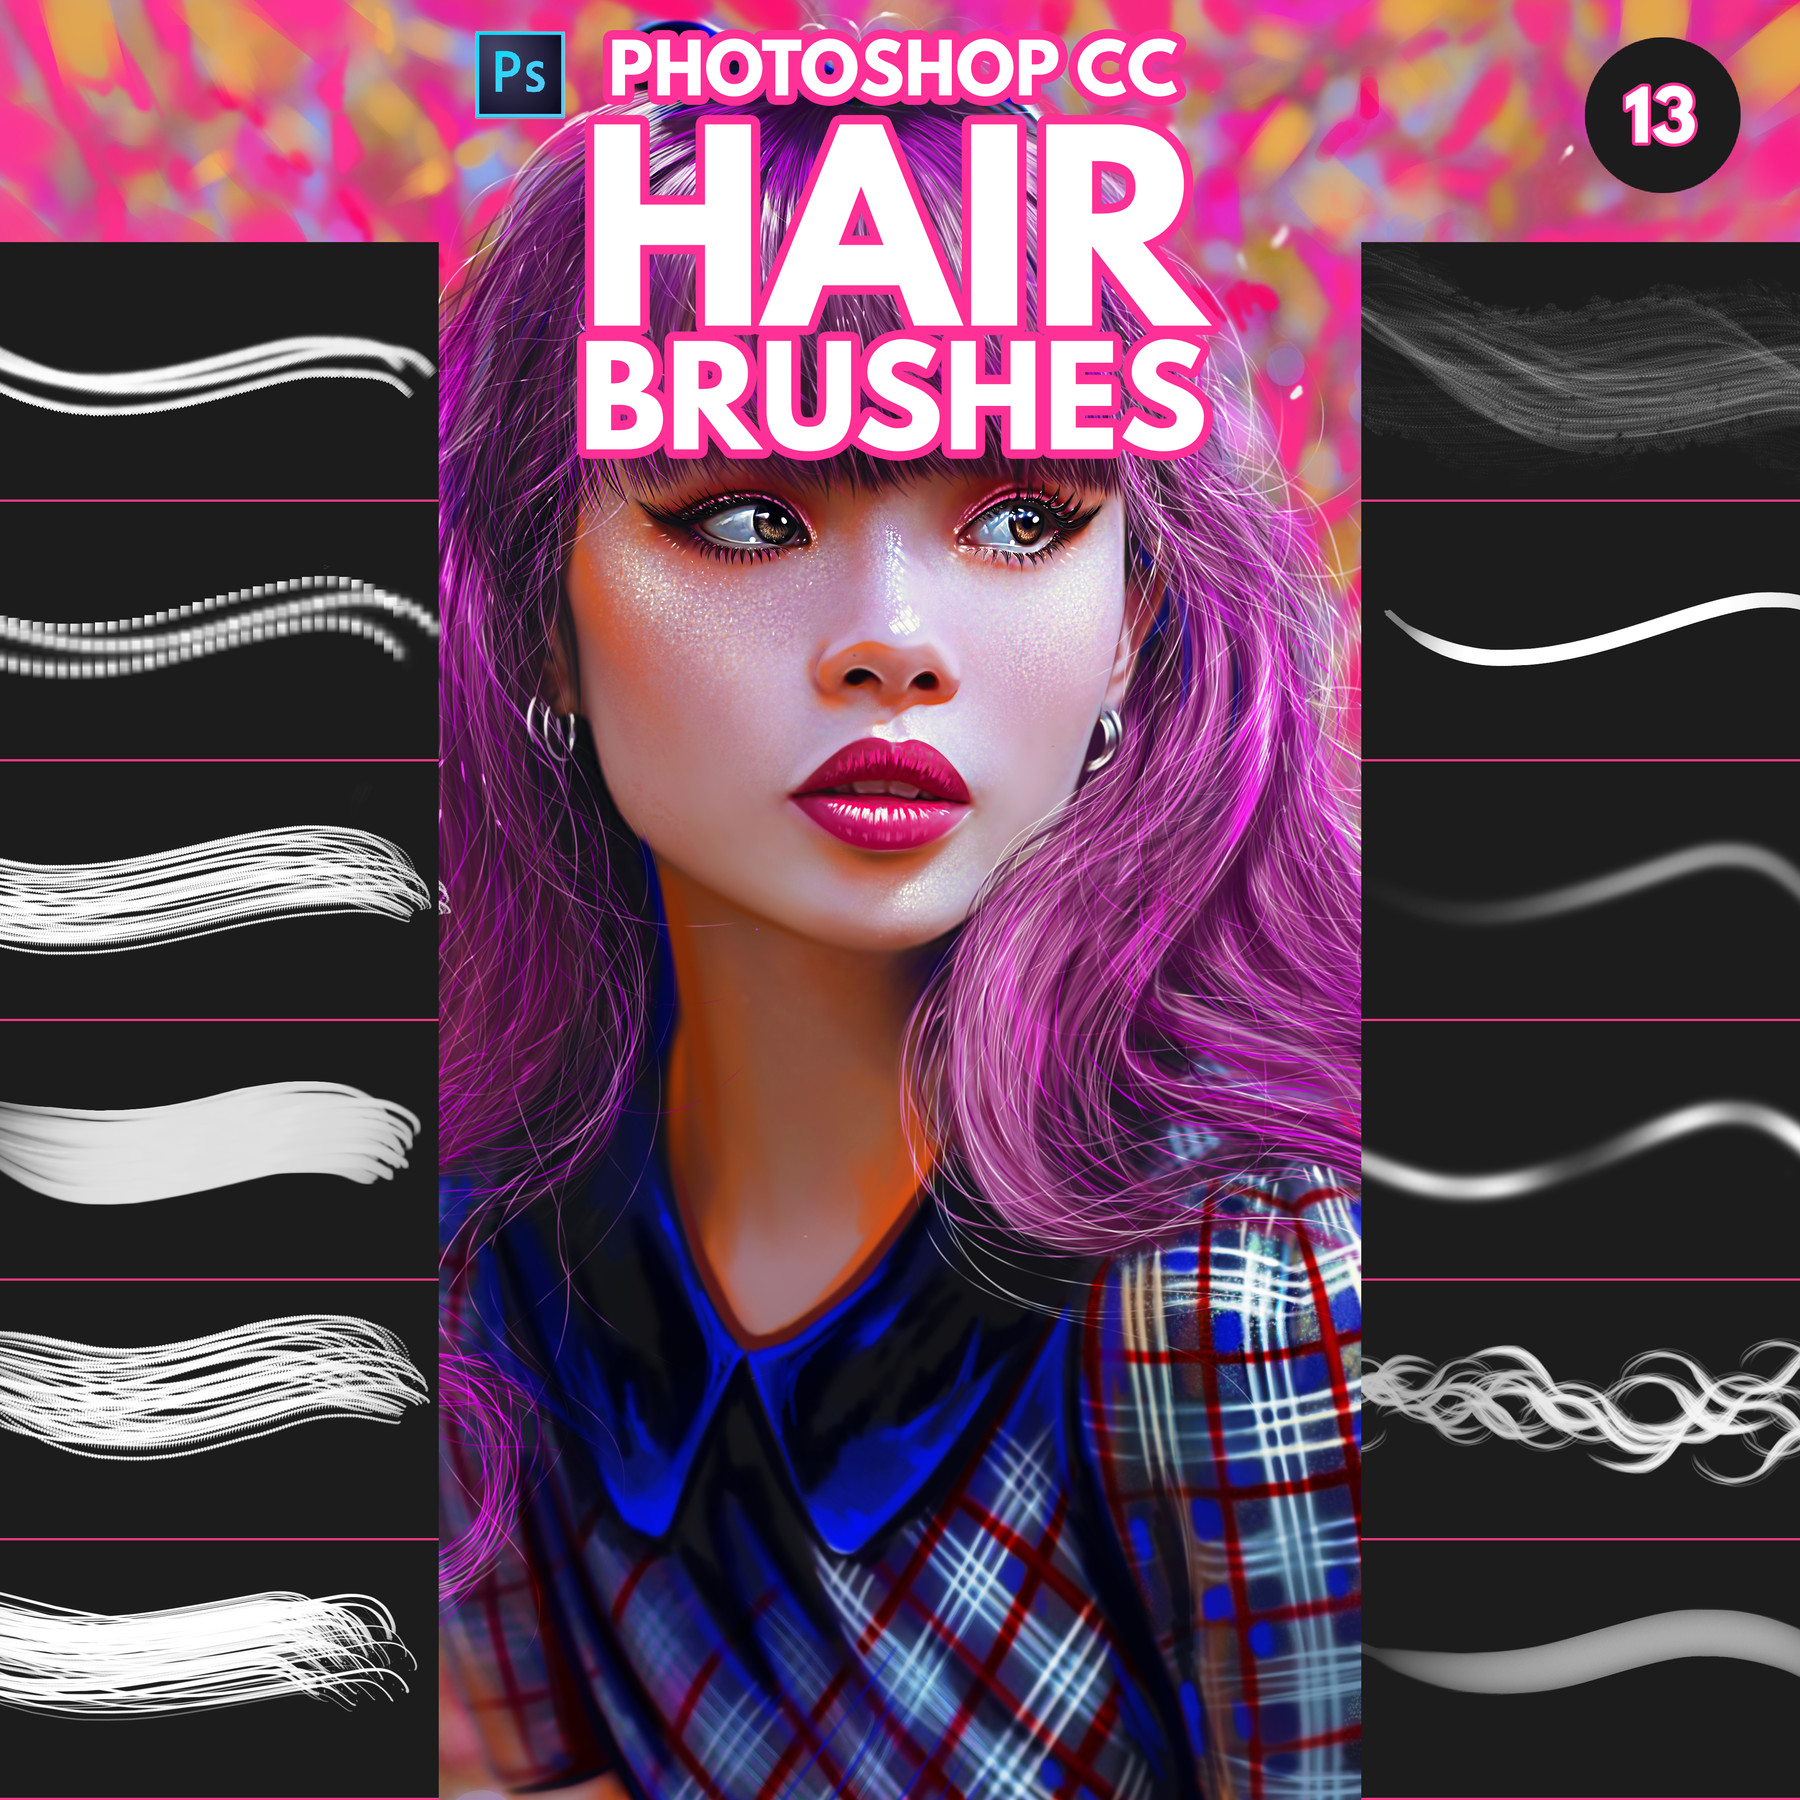 single hair brush photoshop